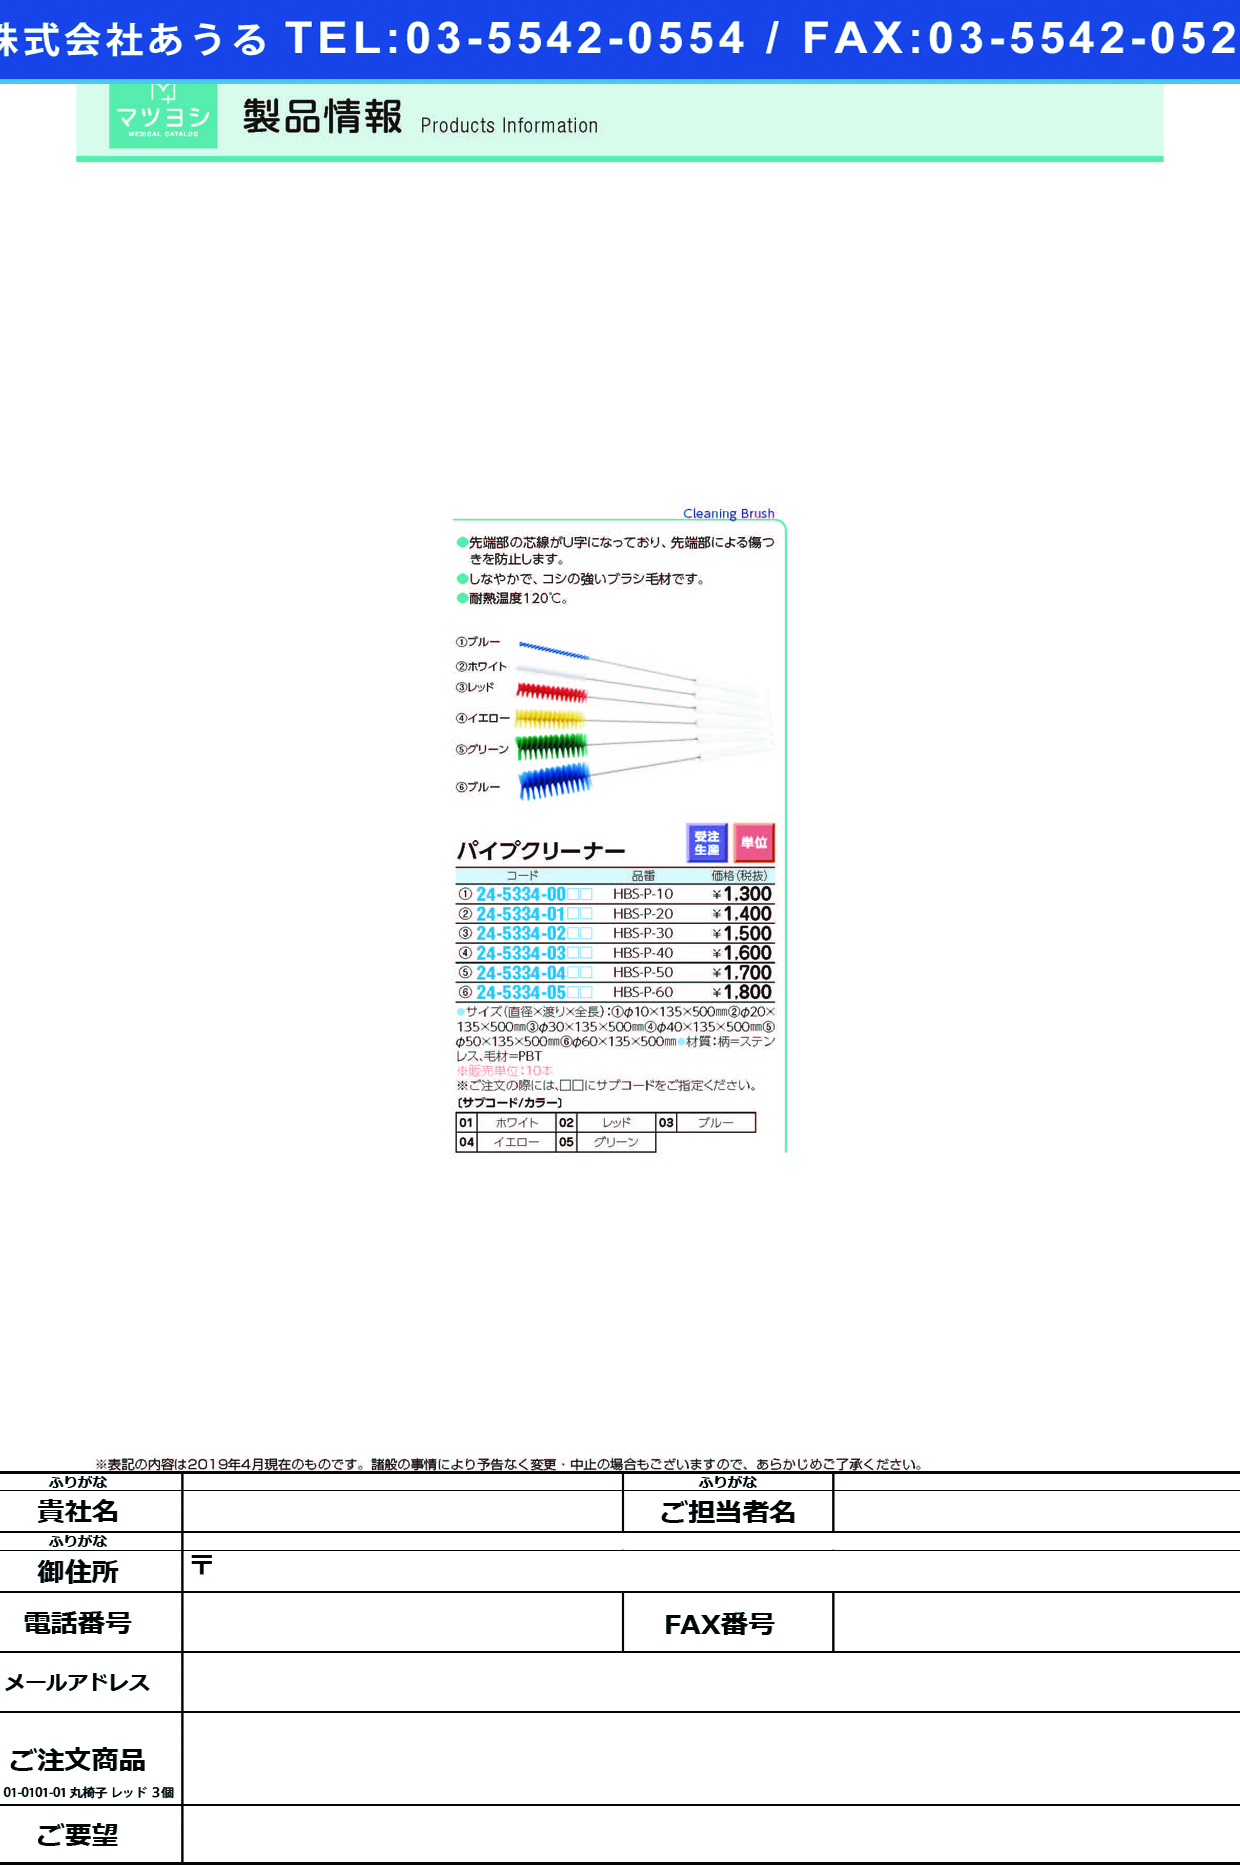 (24-5334-00)パイプクリーナー HBS-P-10 ﾊﾟｲﾌﾟｸﾘｰﾅｰ グリーン【10本単位】【2019年カタログ商品】